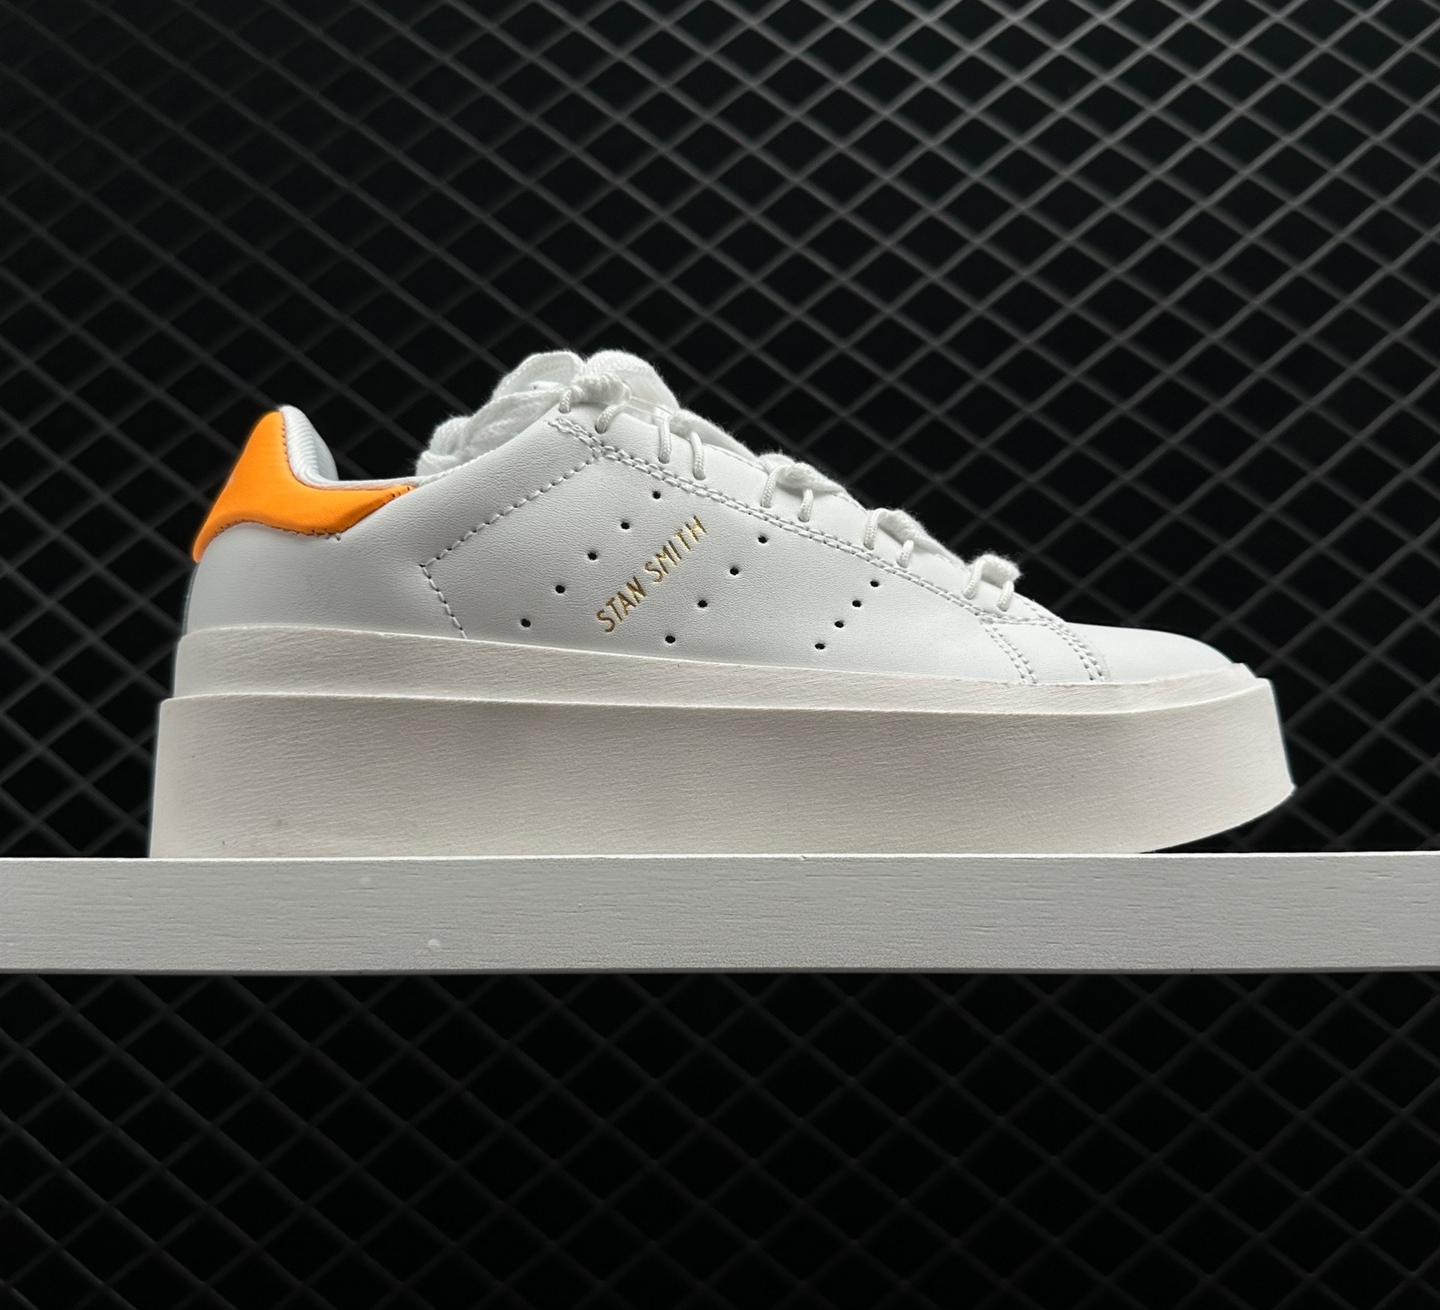 Adidas Stan Smith Bonega White Beam Orange GY9342 - Trendy and Versatile Sneakers